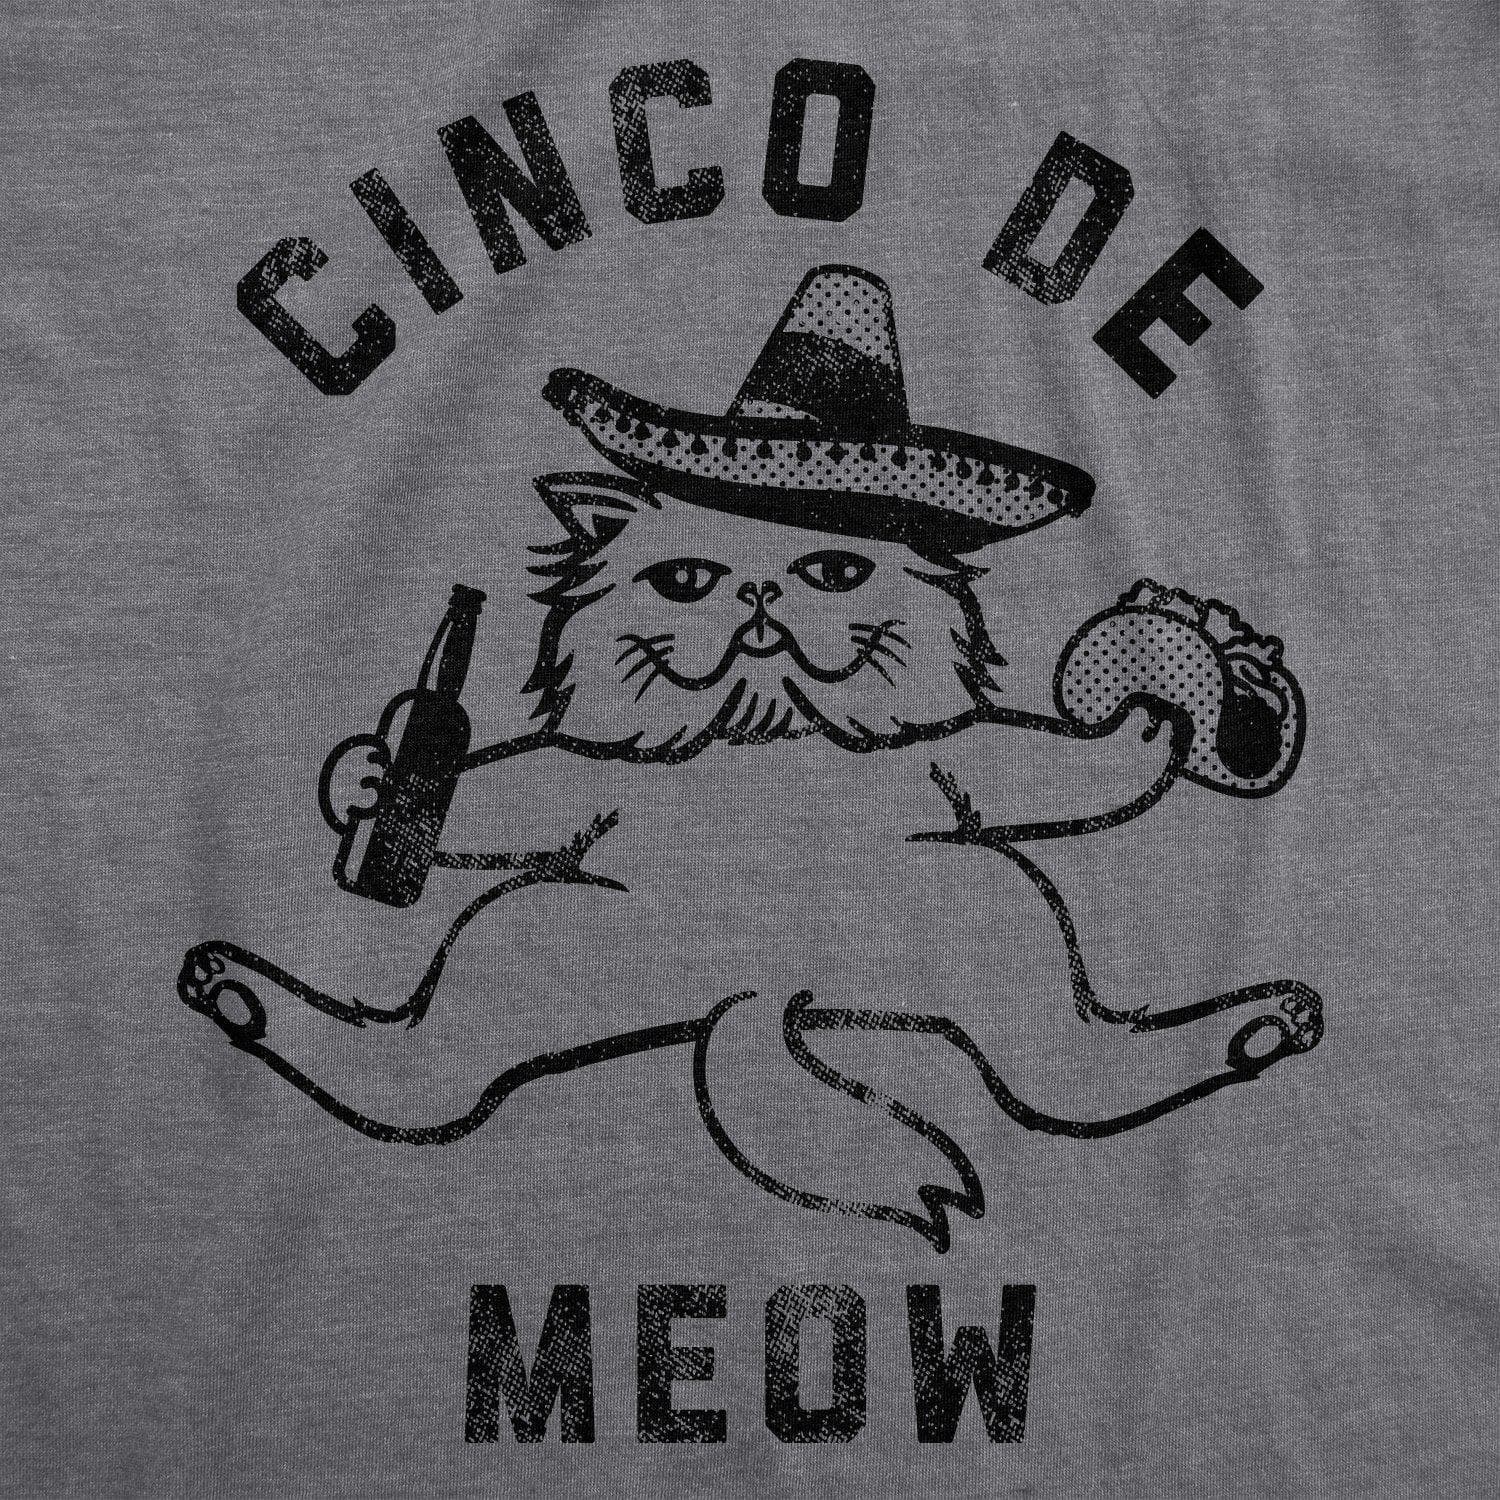 Cinco De Meow Men's Tshirt - Crazy Dog T-Shirts